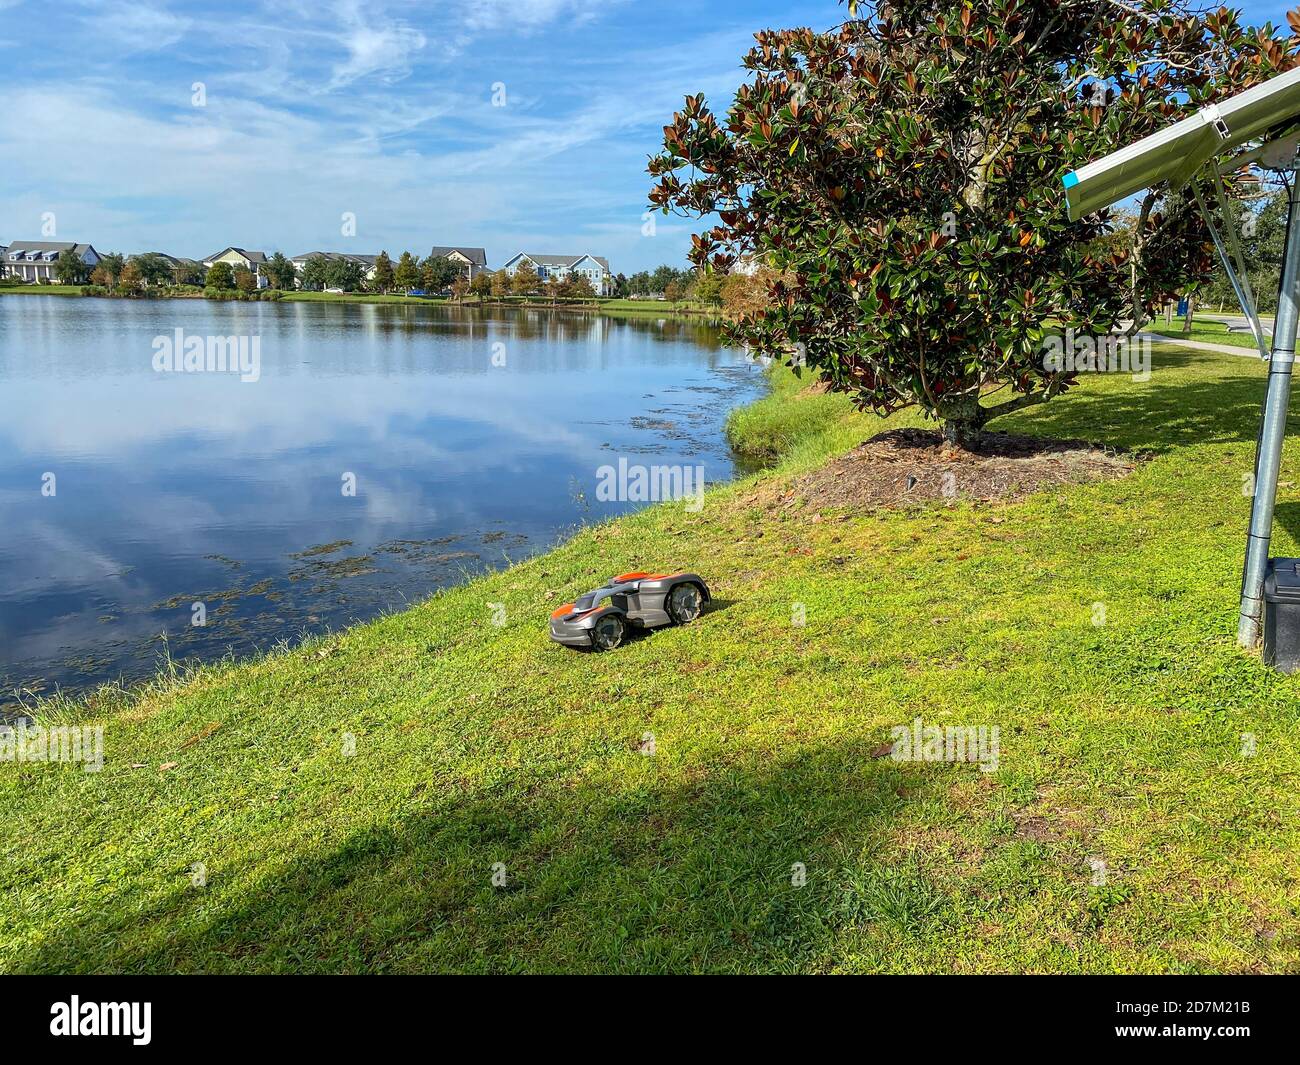 Orlando, FL./USA - 10/16/20: Une tondeuse autonome Husqvarna tondant près d'un lac dans le quartier de Laureate Park à Orlando, en Floride Banque D'Images